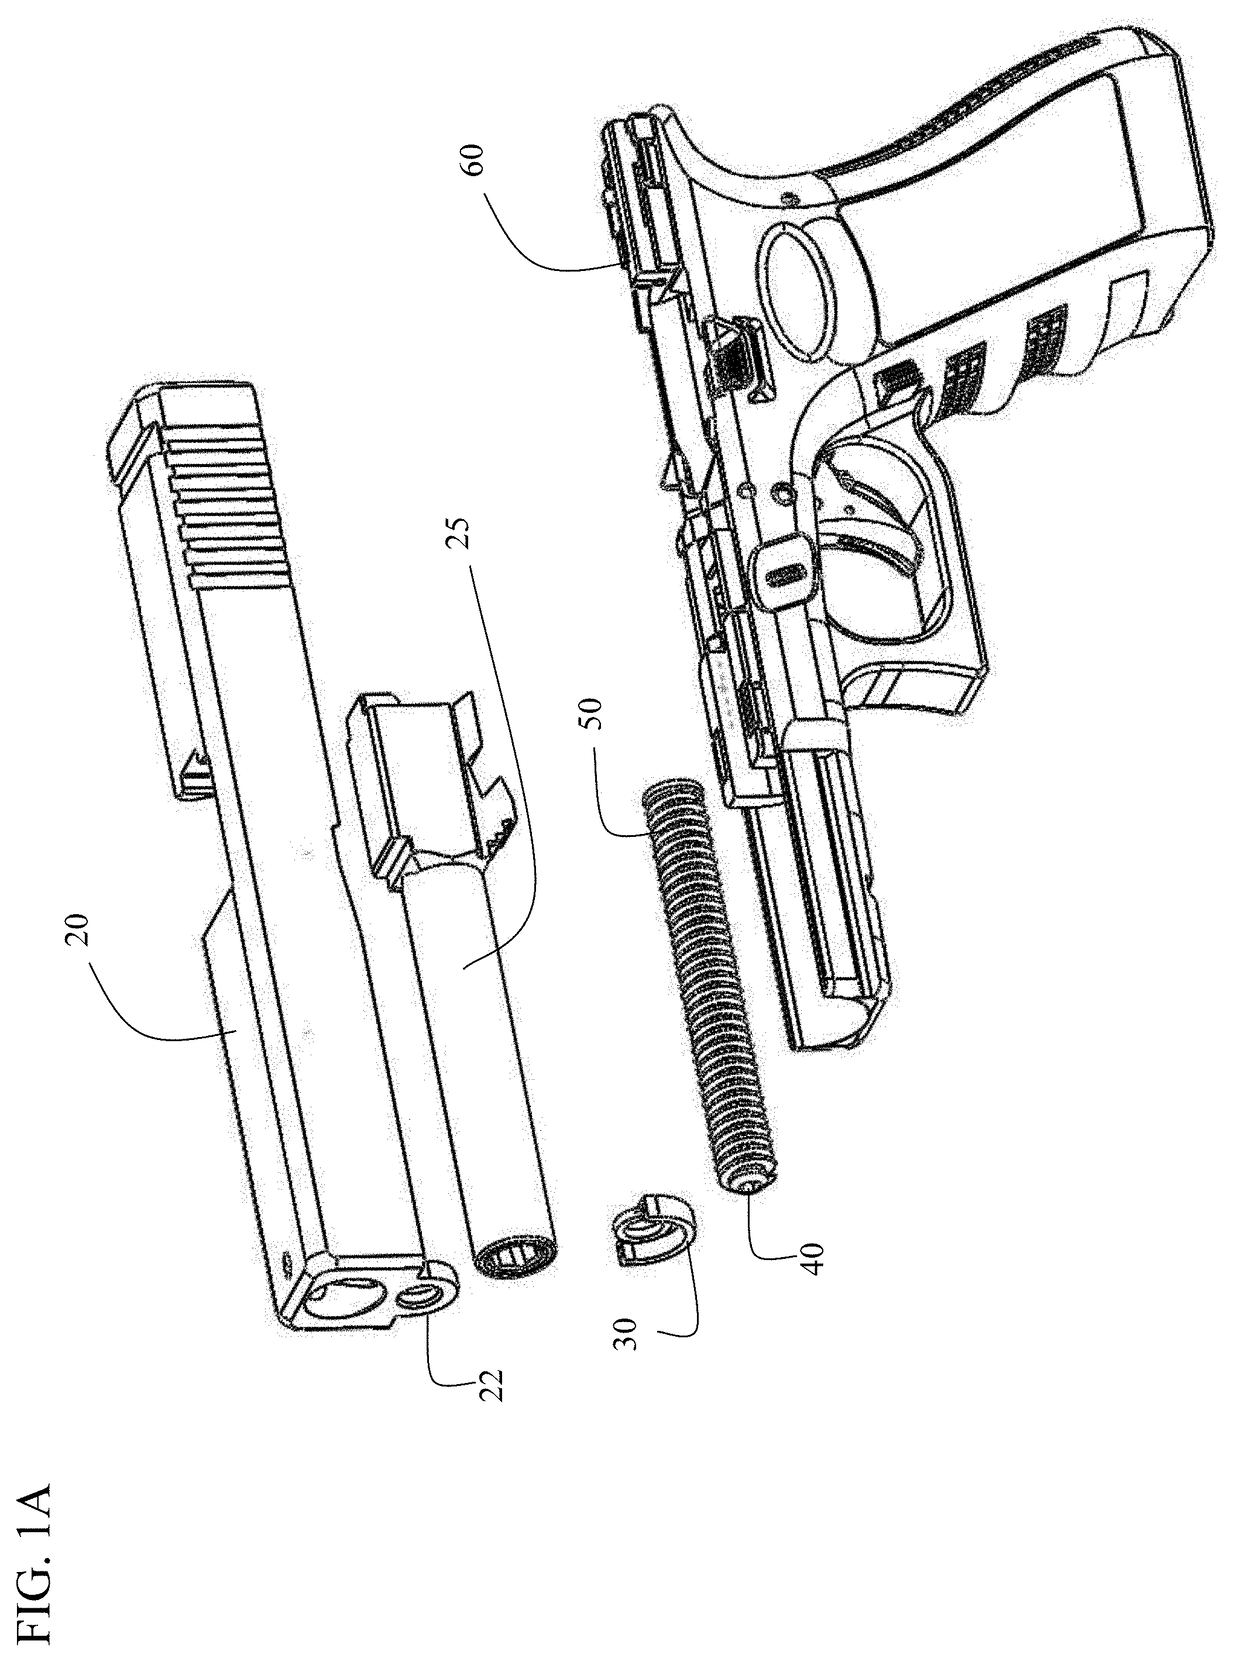 Handgun slide to frame adapter